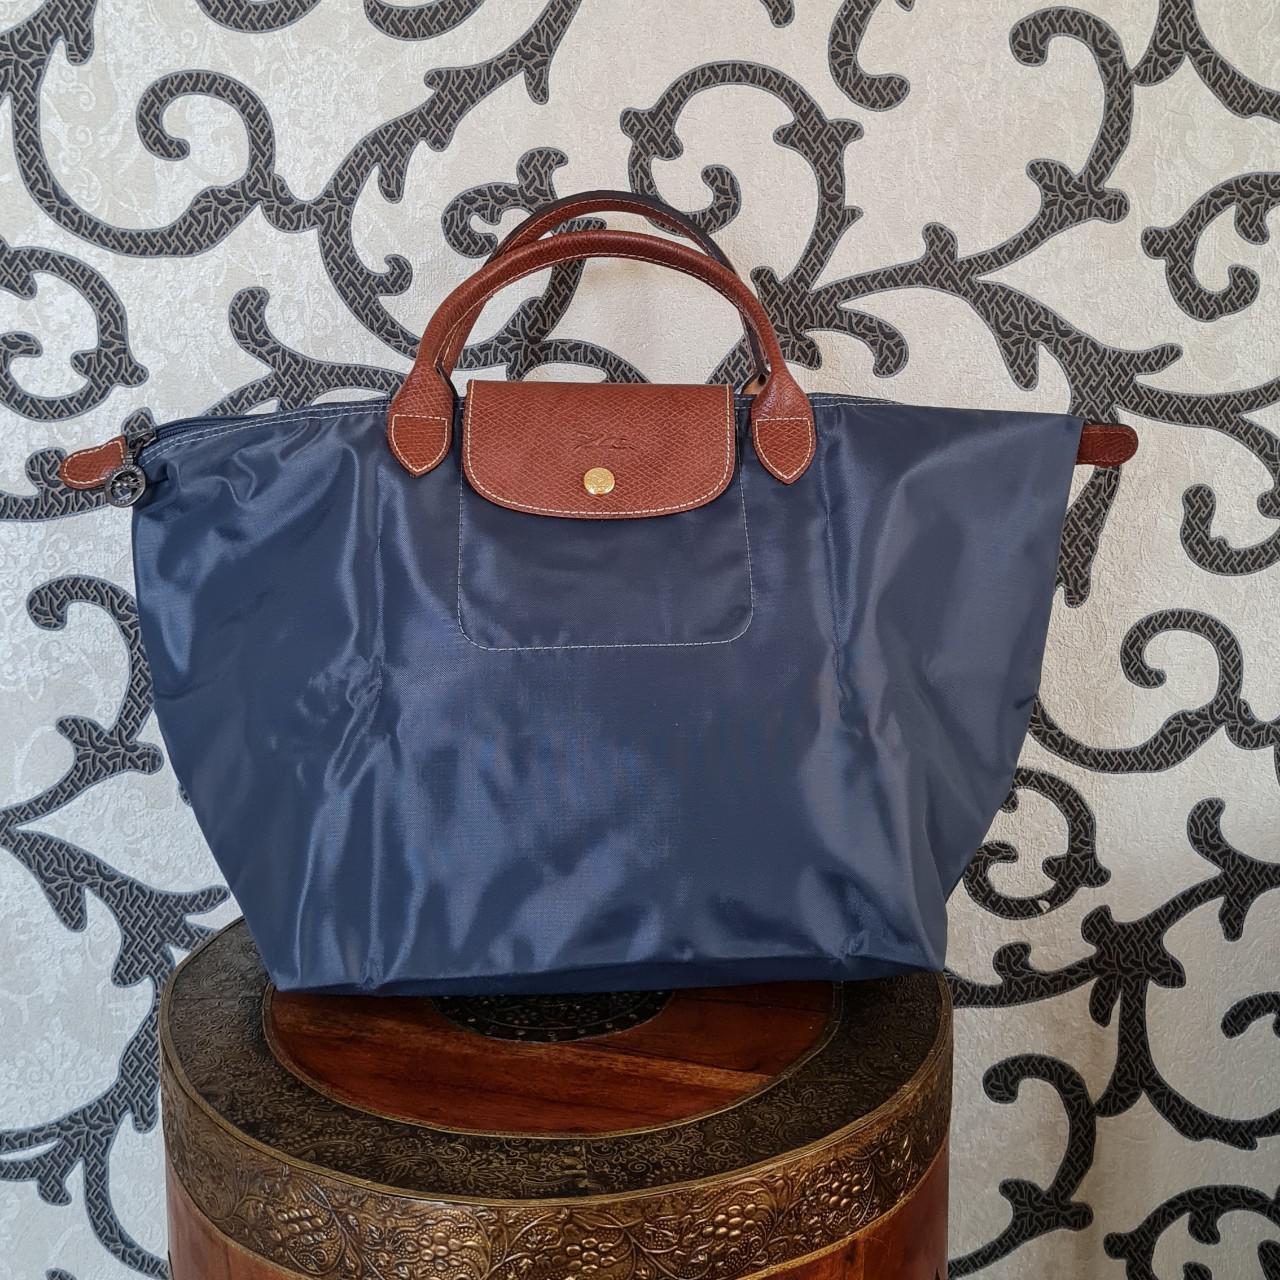 Product Image 1 - Longchamp le pliage canvas handbag.
Charcoal